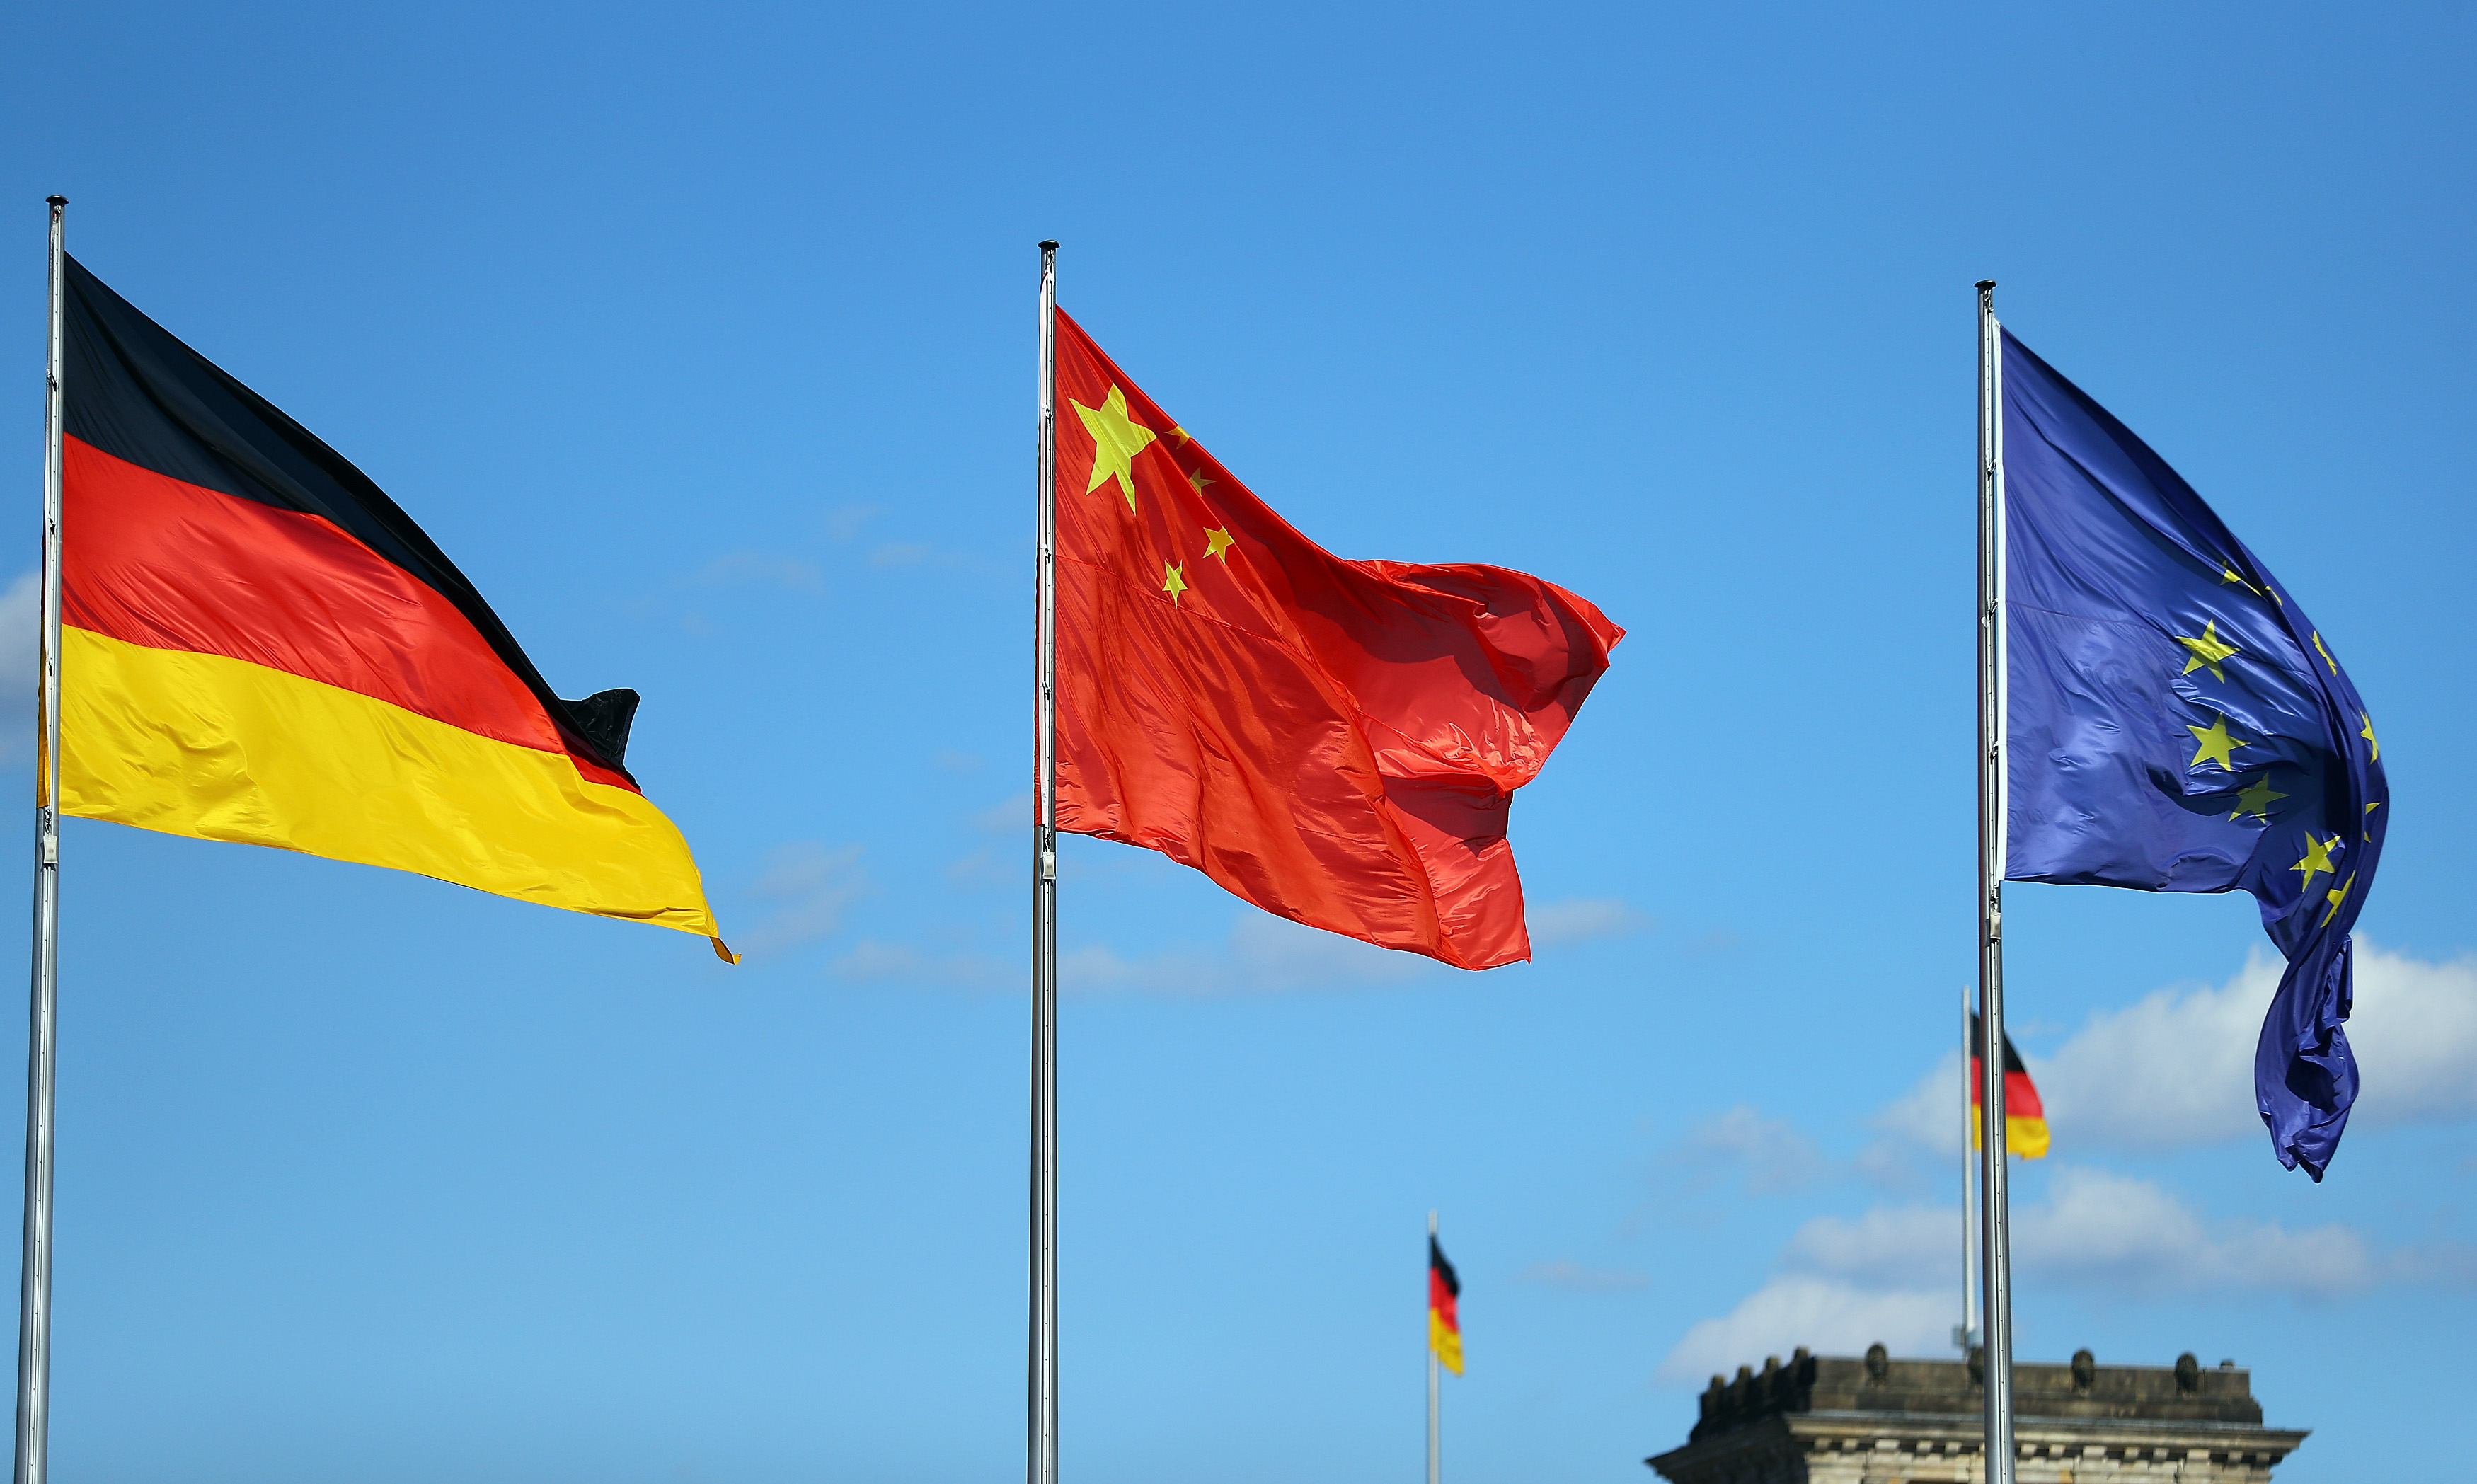 Le Premier ministre chinois reçu par le chancelier allemand en vue d'une meilleure coopération économique